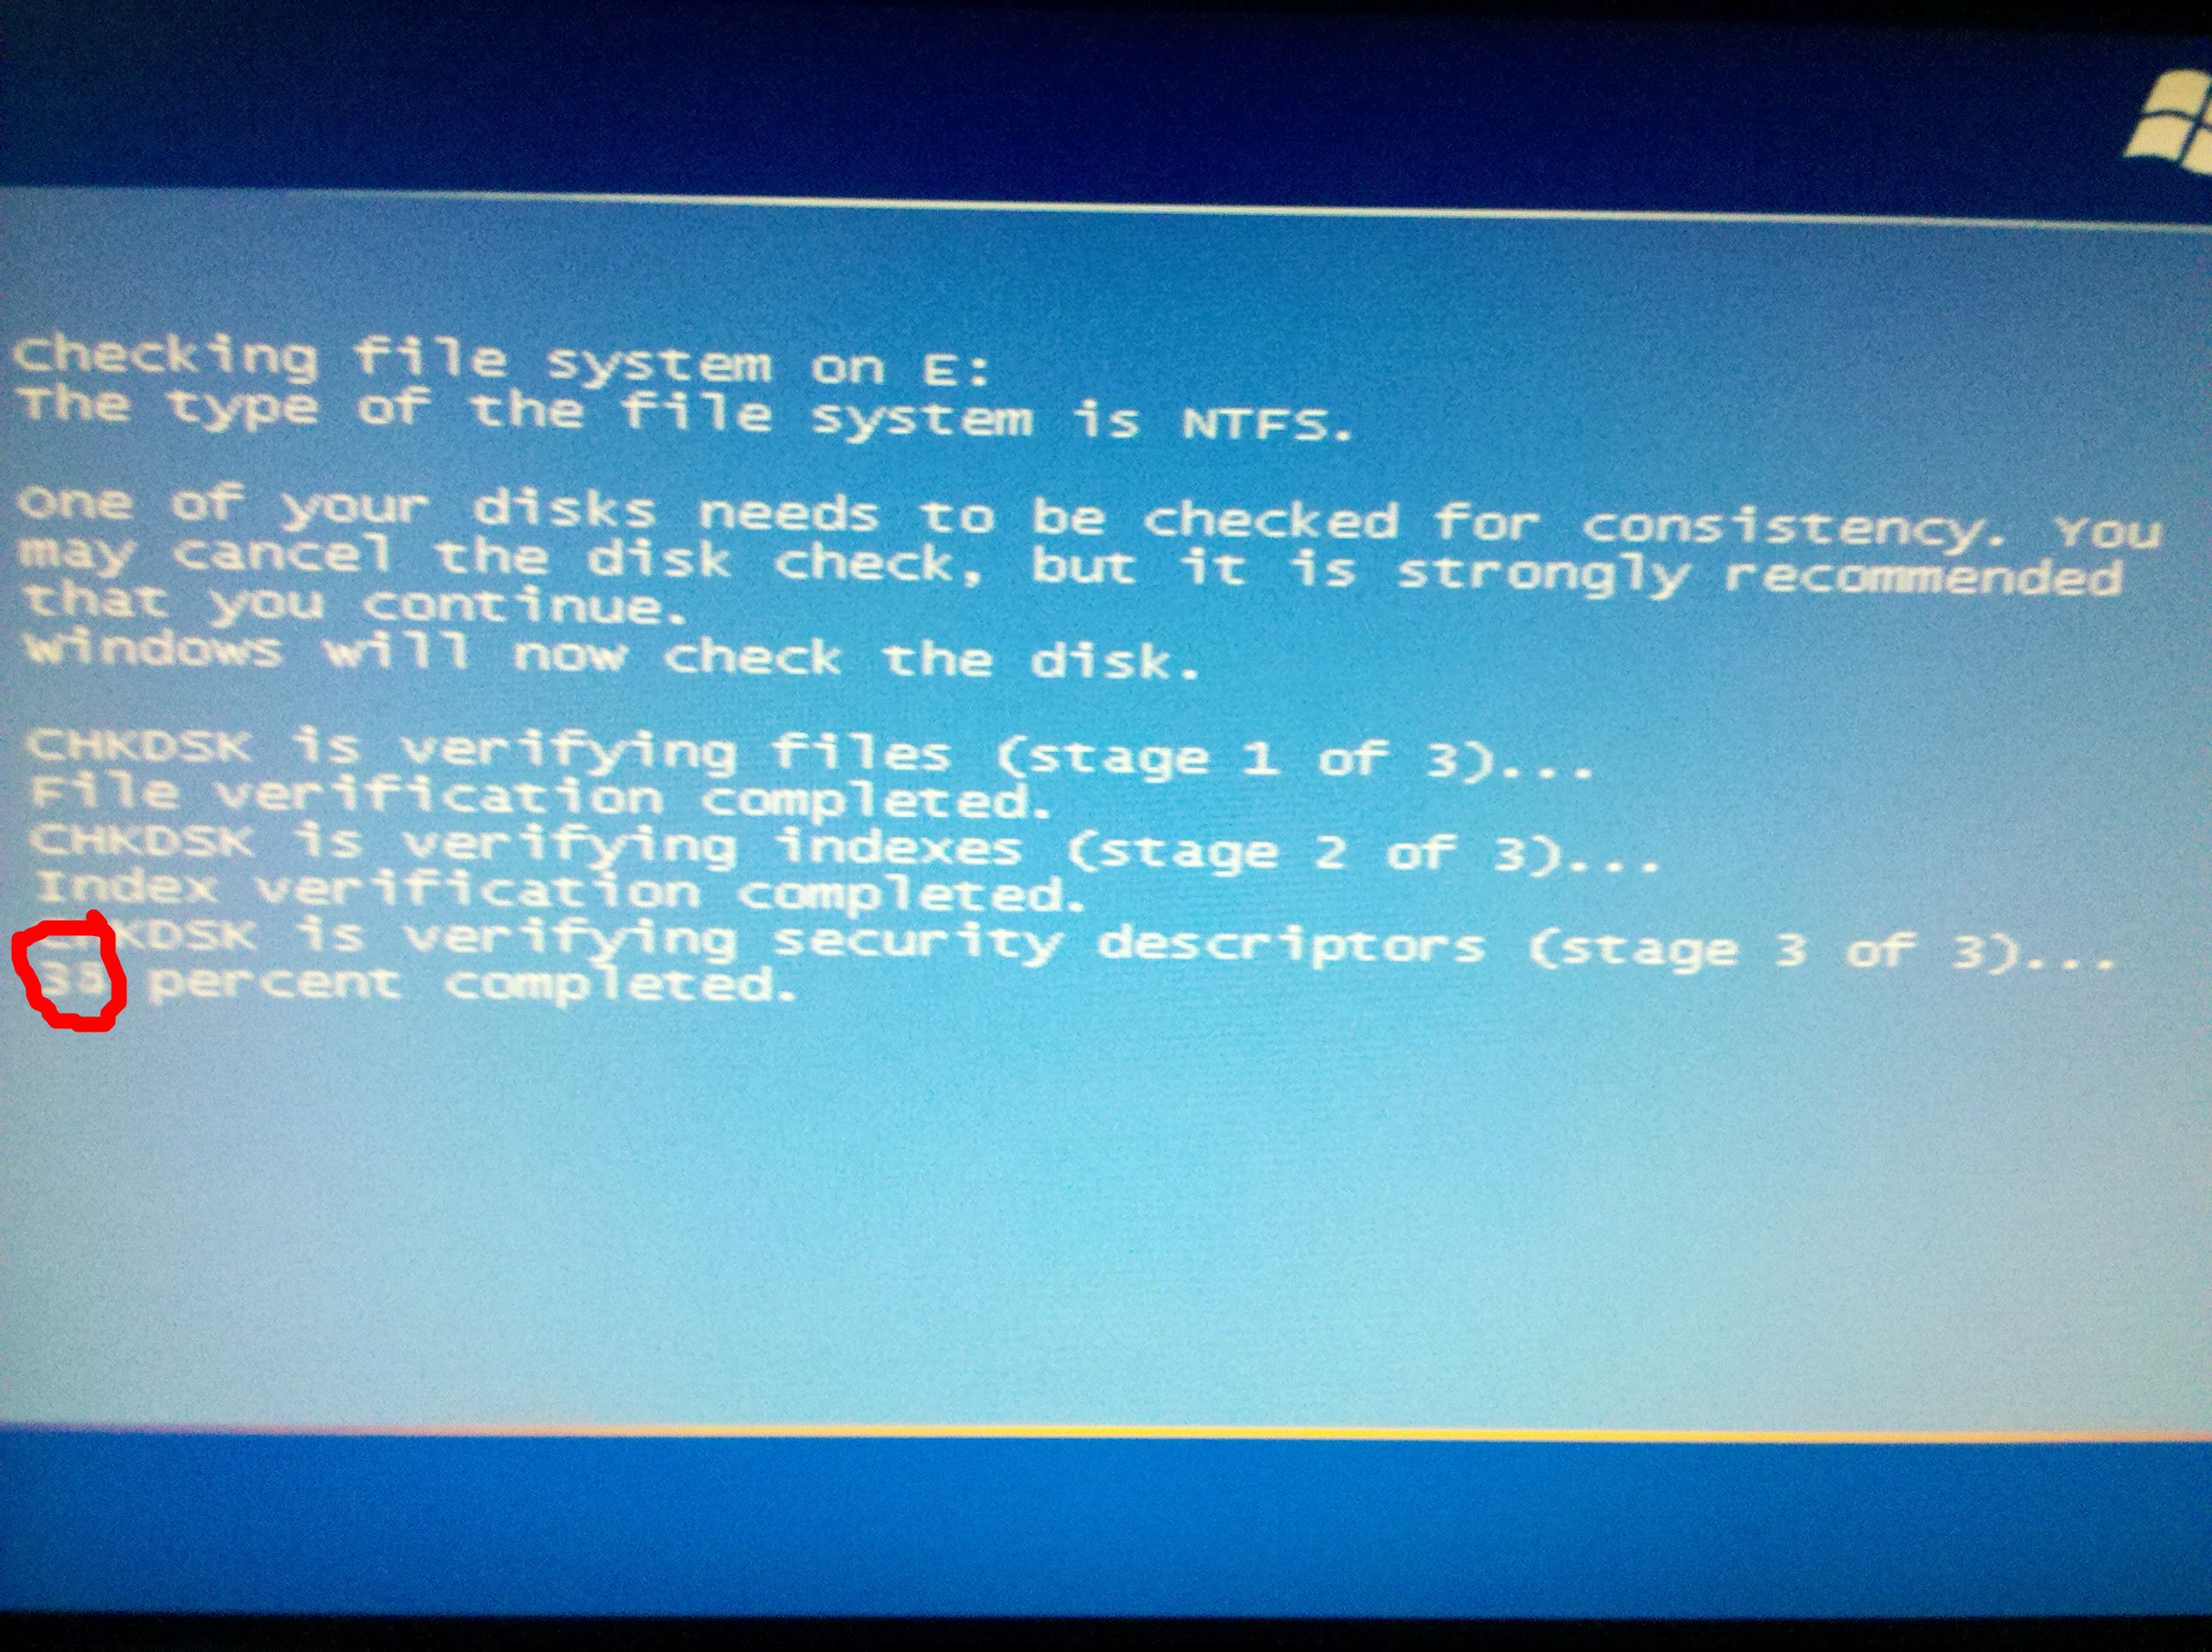 电脑每天一开机就蓝屏死机，重新启动后又好了，求解决办法。​